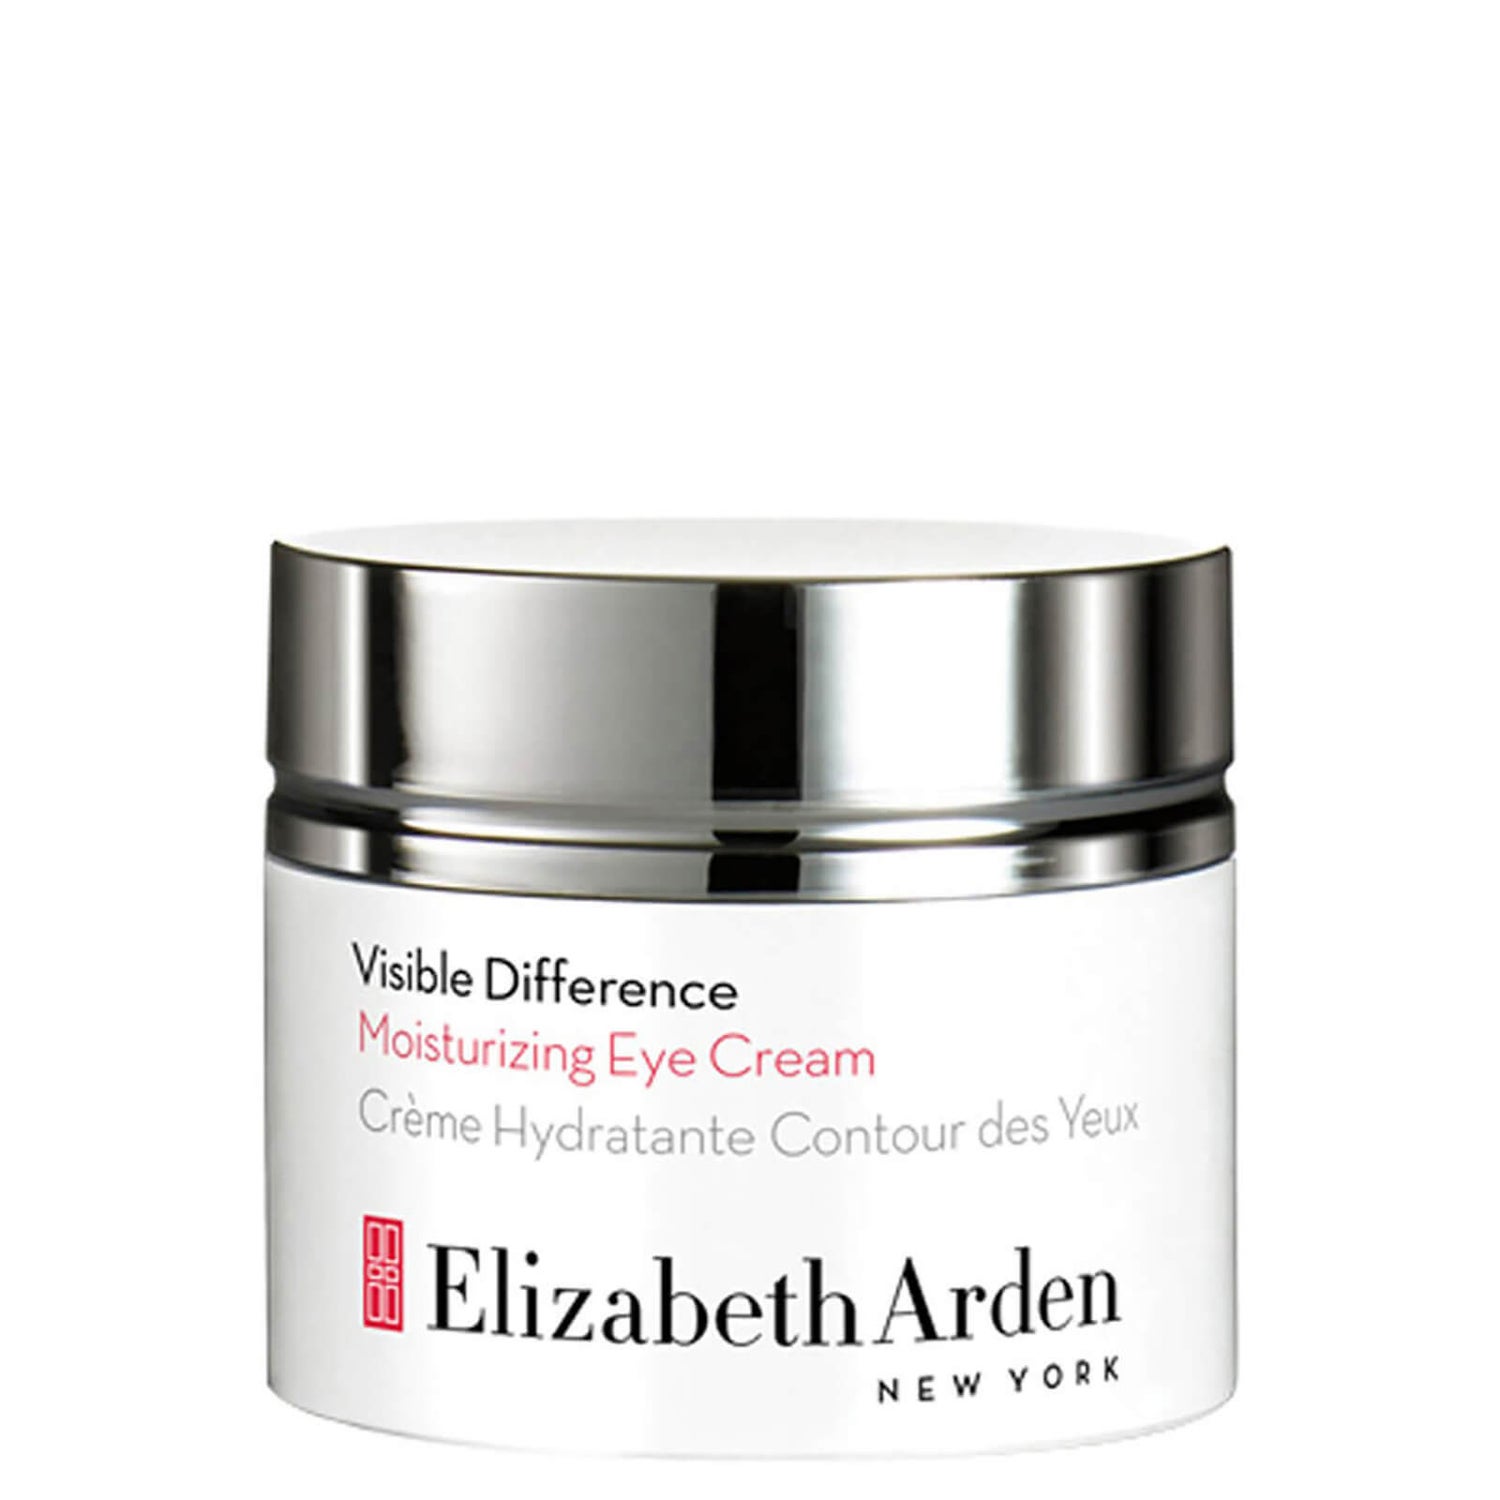 Elizabeth Arden Visible Difference Moisturising Eye Cream (15ml)